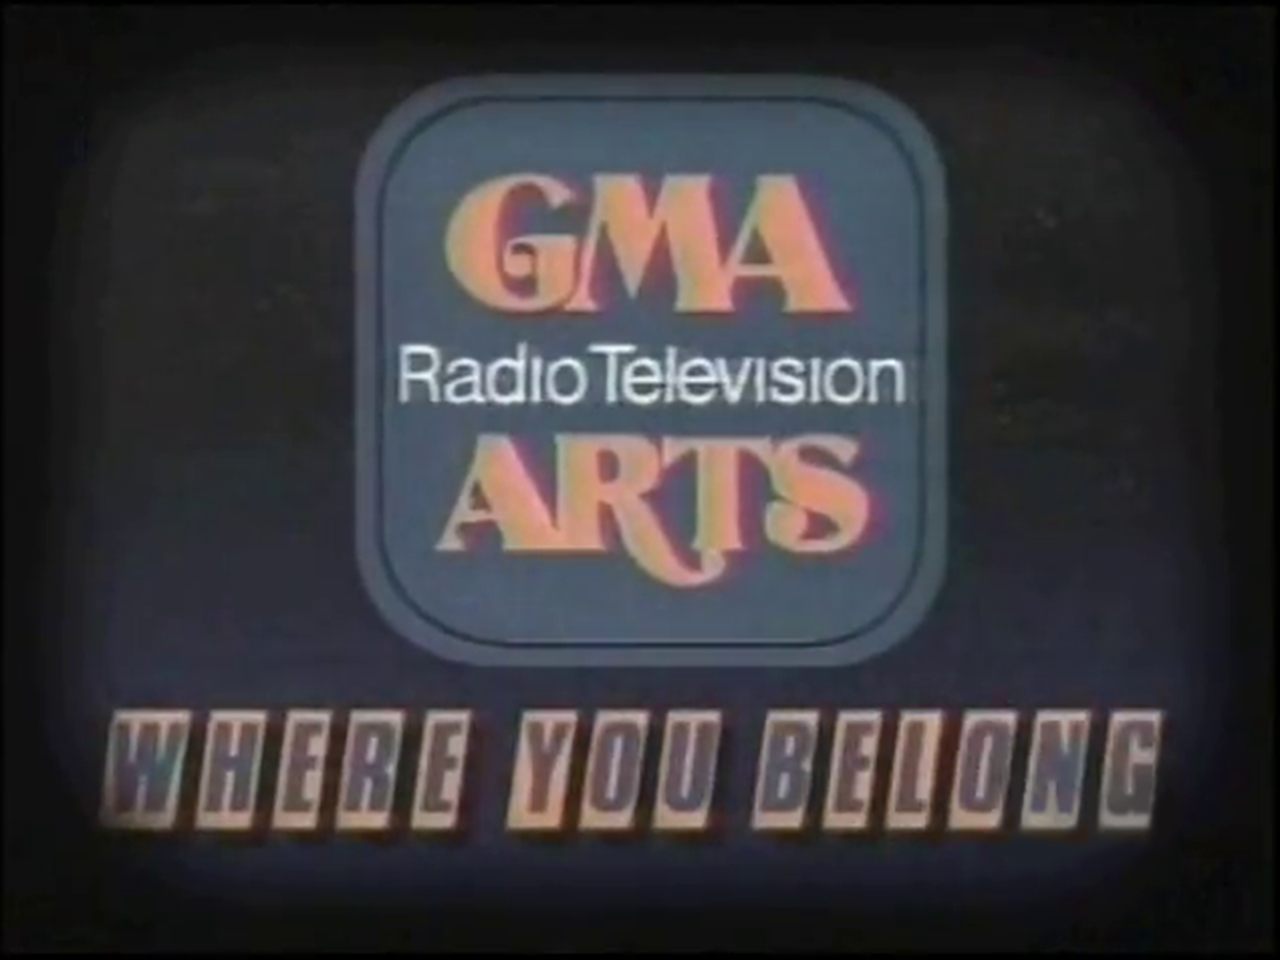 GMA Radio Television Arts 1986-1990.png